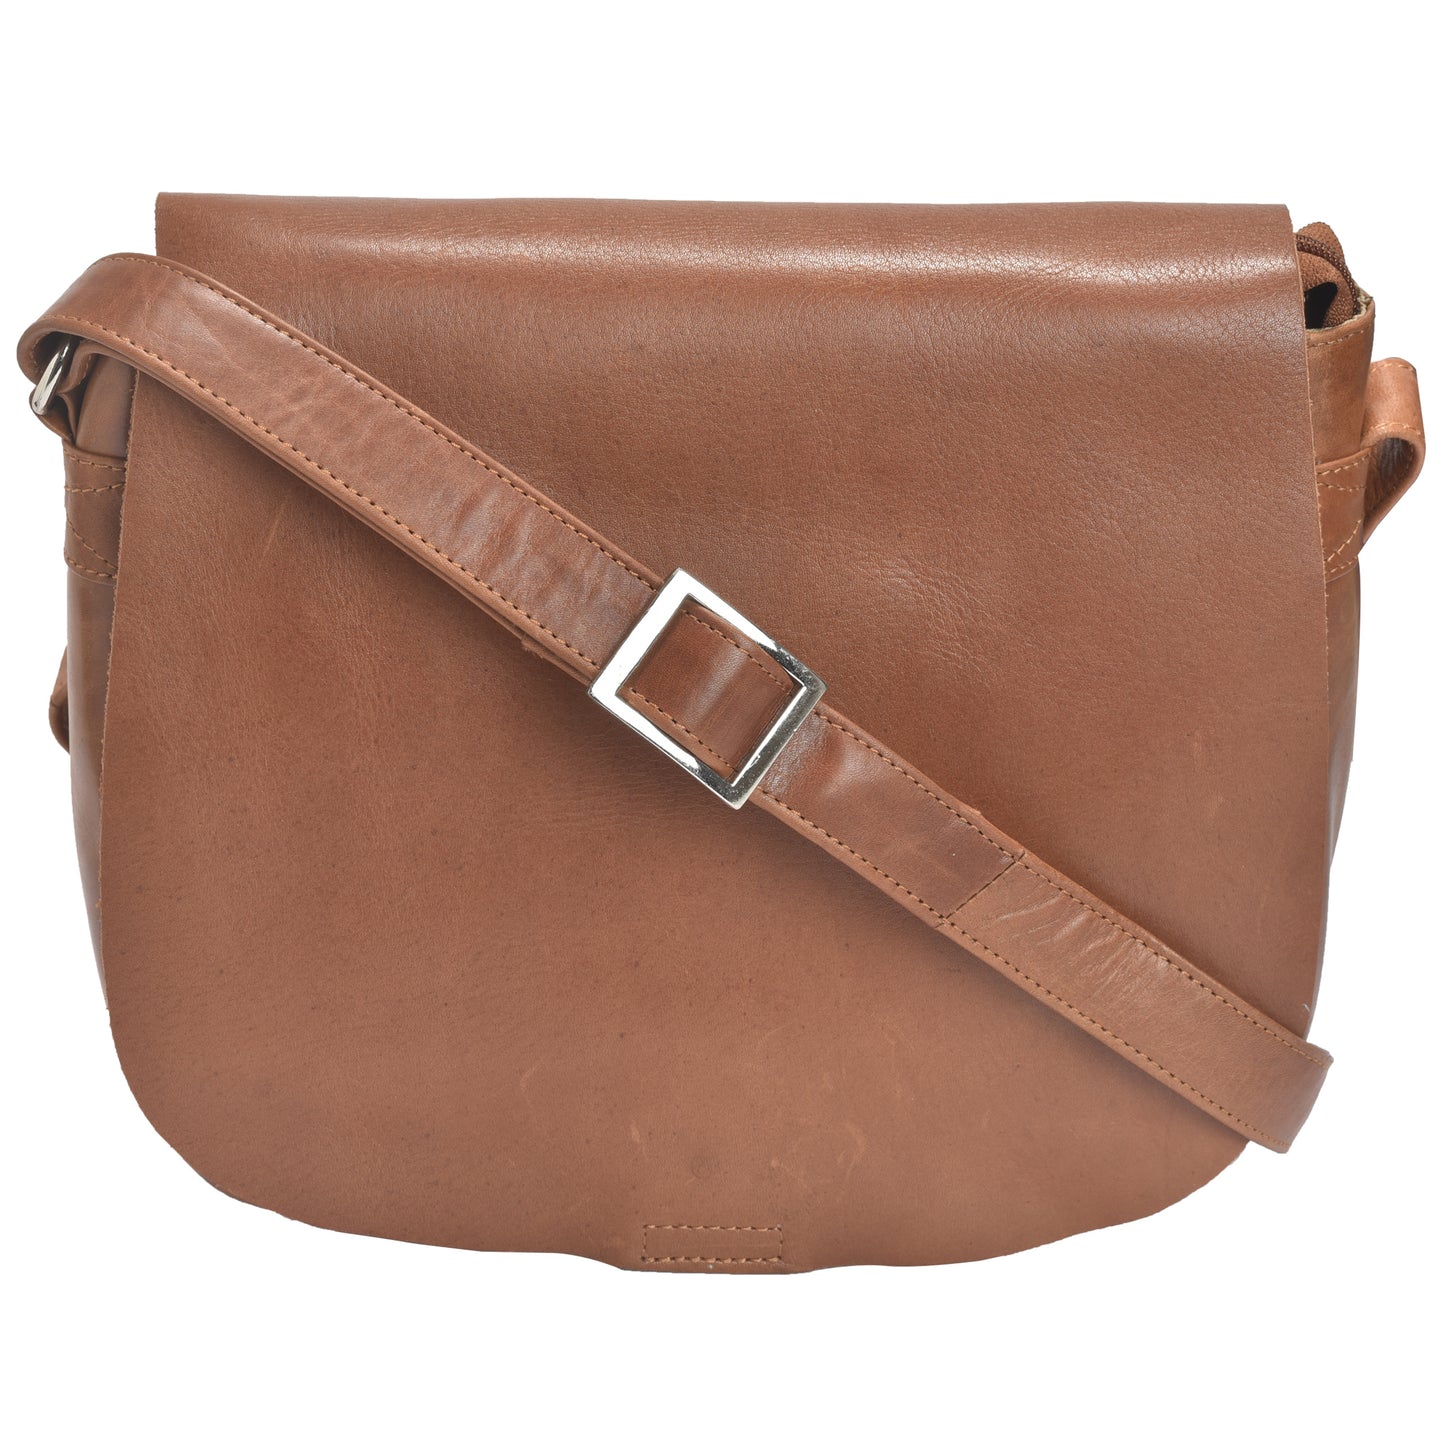 G&T Full-grain Leather Medium Saddle Bag with Long Adjustable Shoulder Strap